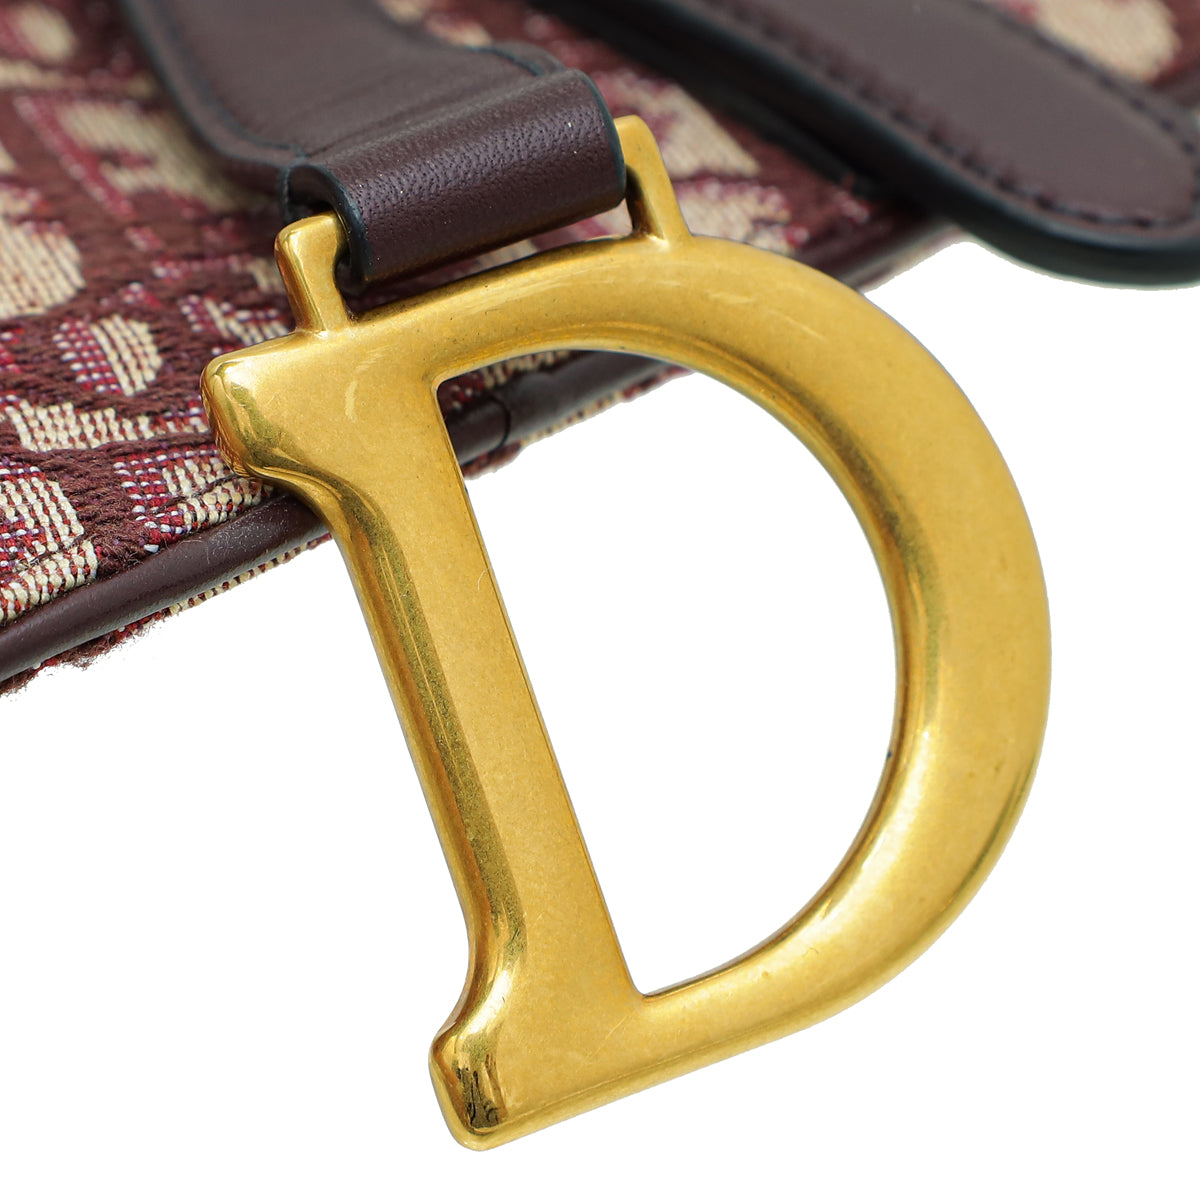 Christian Dior Burgundy Oblique Saddle Belt Bag